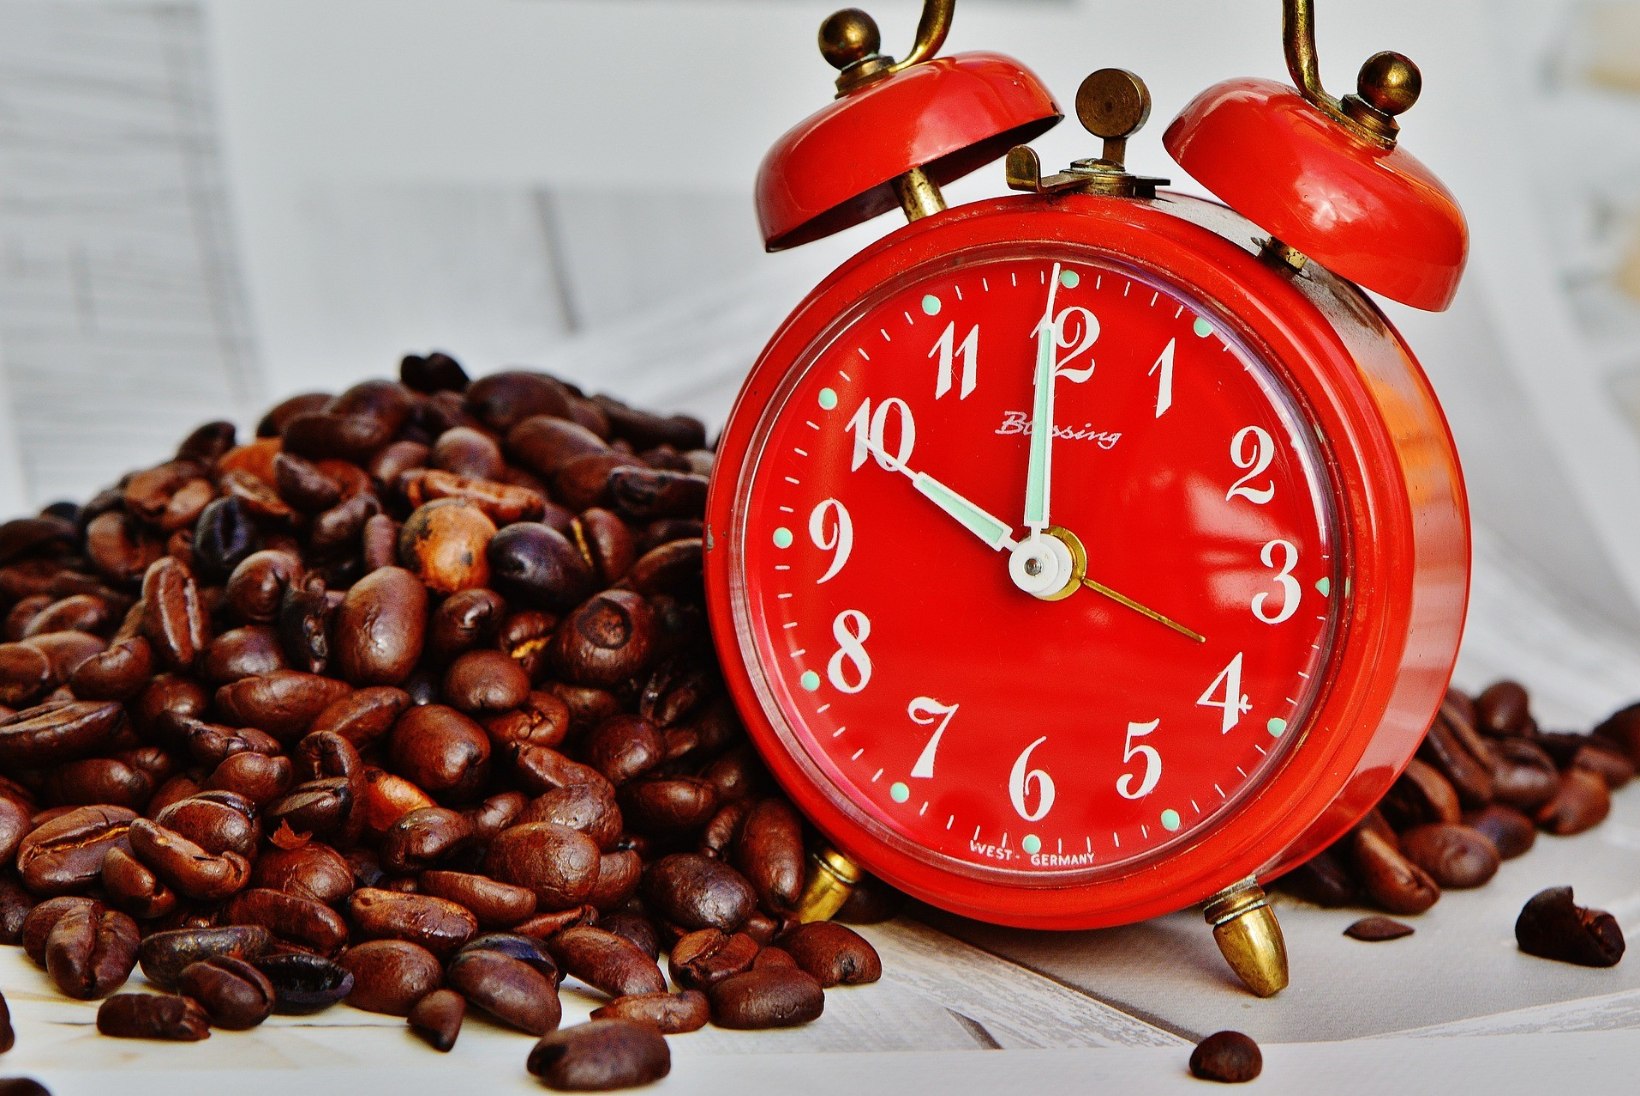 Täna on rahvusvaheline kohvipäev: aita kohvipaksust elektrit toota